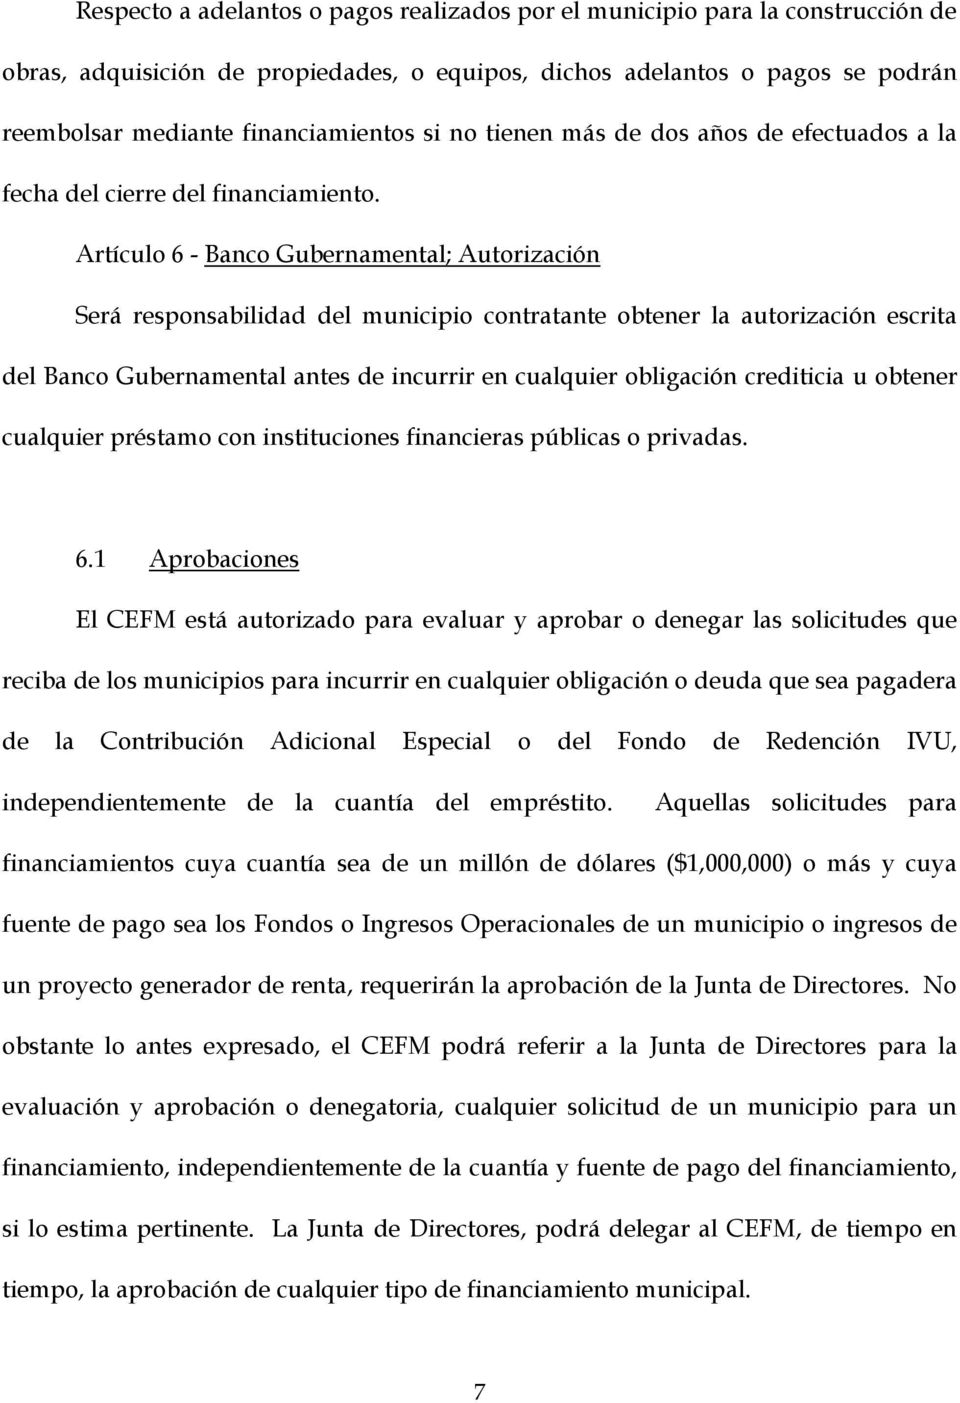 Artículo 6 - Banco Gubernamental; Autorización Será responsabilidad del municipio contratante obtener la autorización escrita del Banco Gubernamental antes de incurrir en cualquier obligación